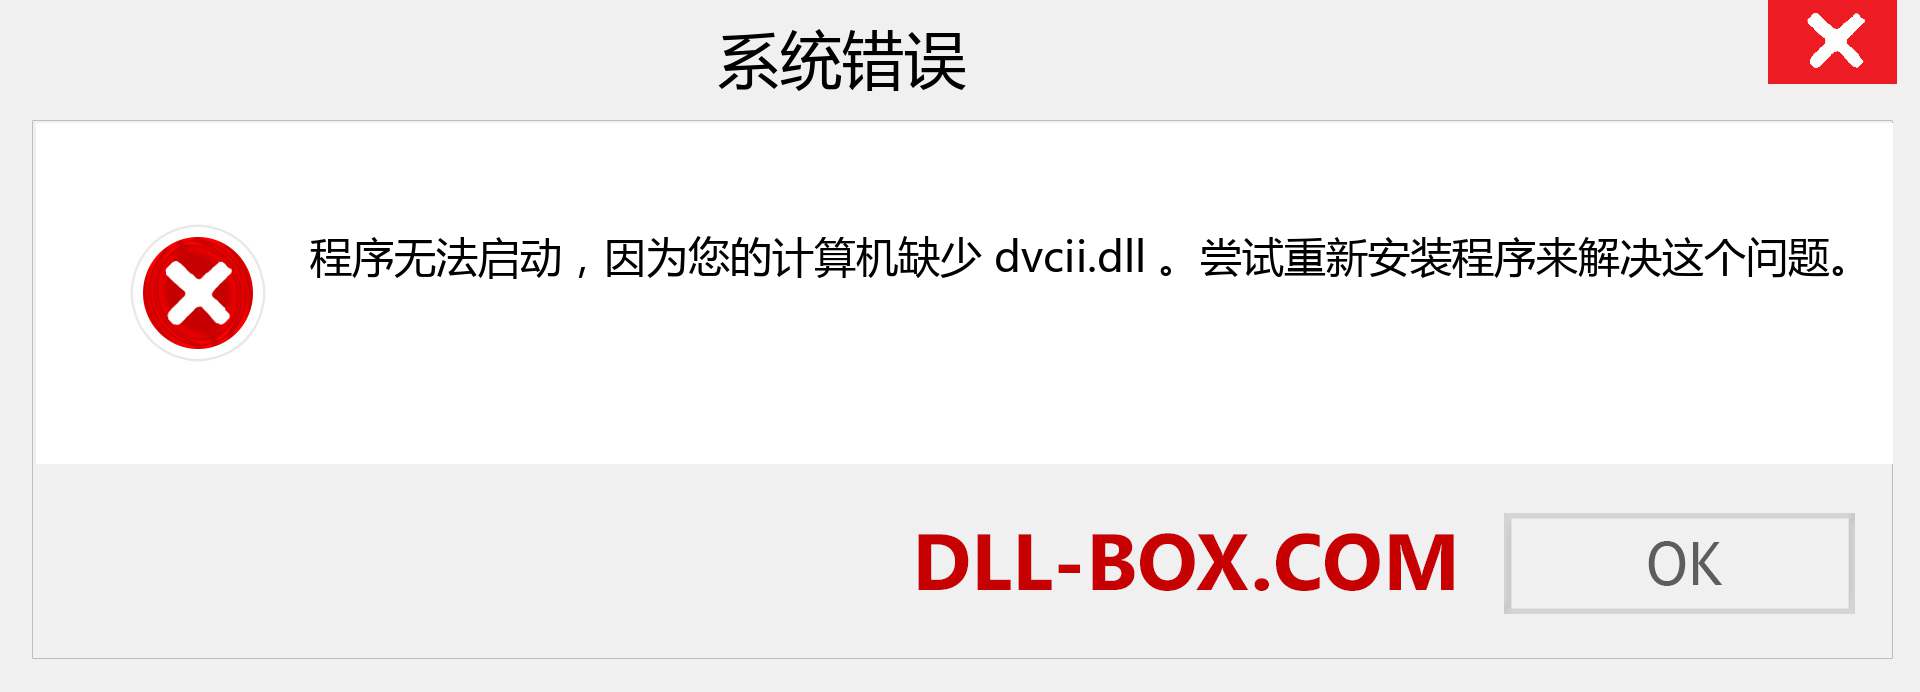 dvcii.dll 文件丢失？。 适用于 Windows 7、8、10 的下载 - 修复 Windows、照片、图像上的 dvcii dll 丢失错误